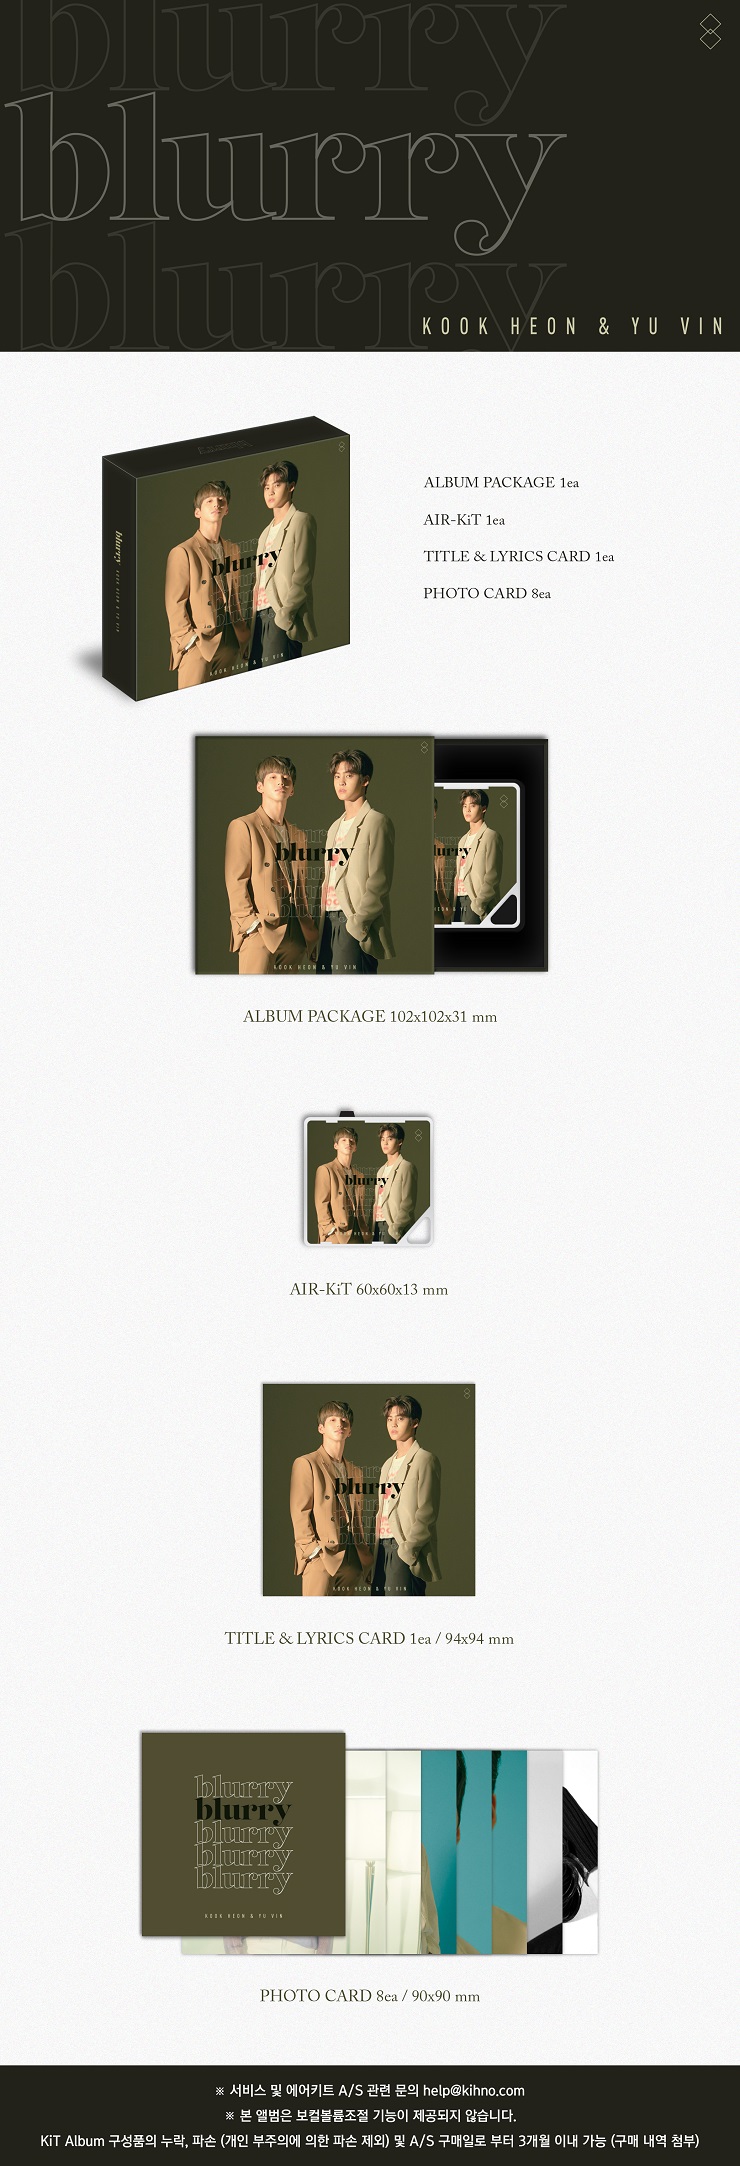 국헌&유빈(KOOK HEON & YU VIN) - BLURRY [Kit Album]